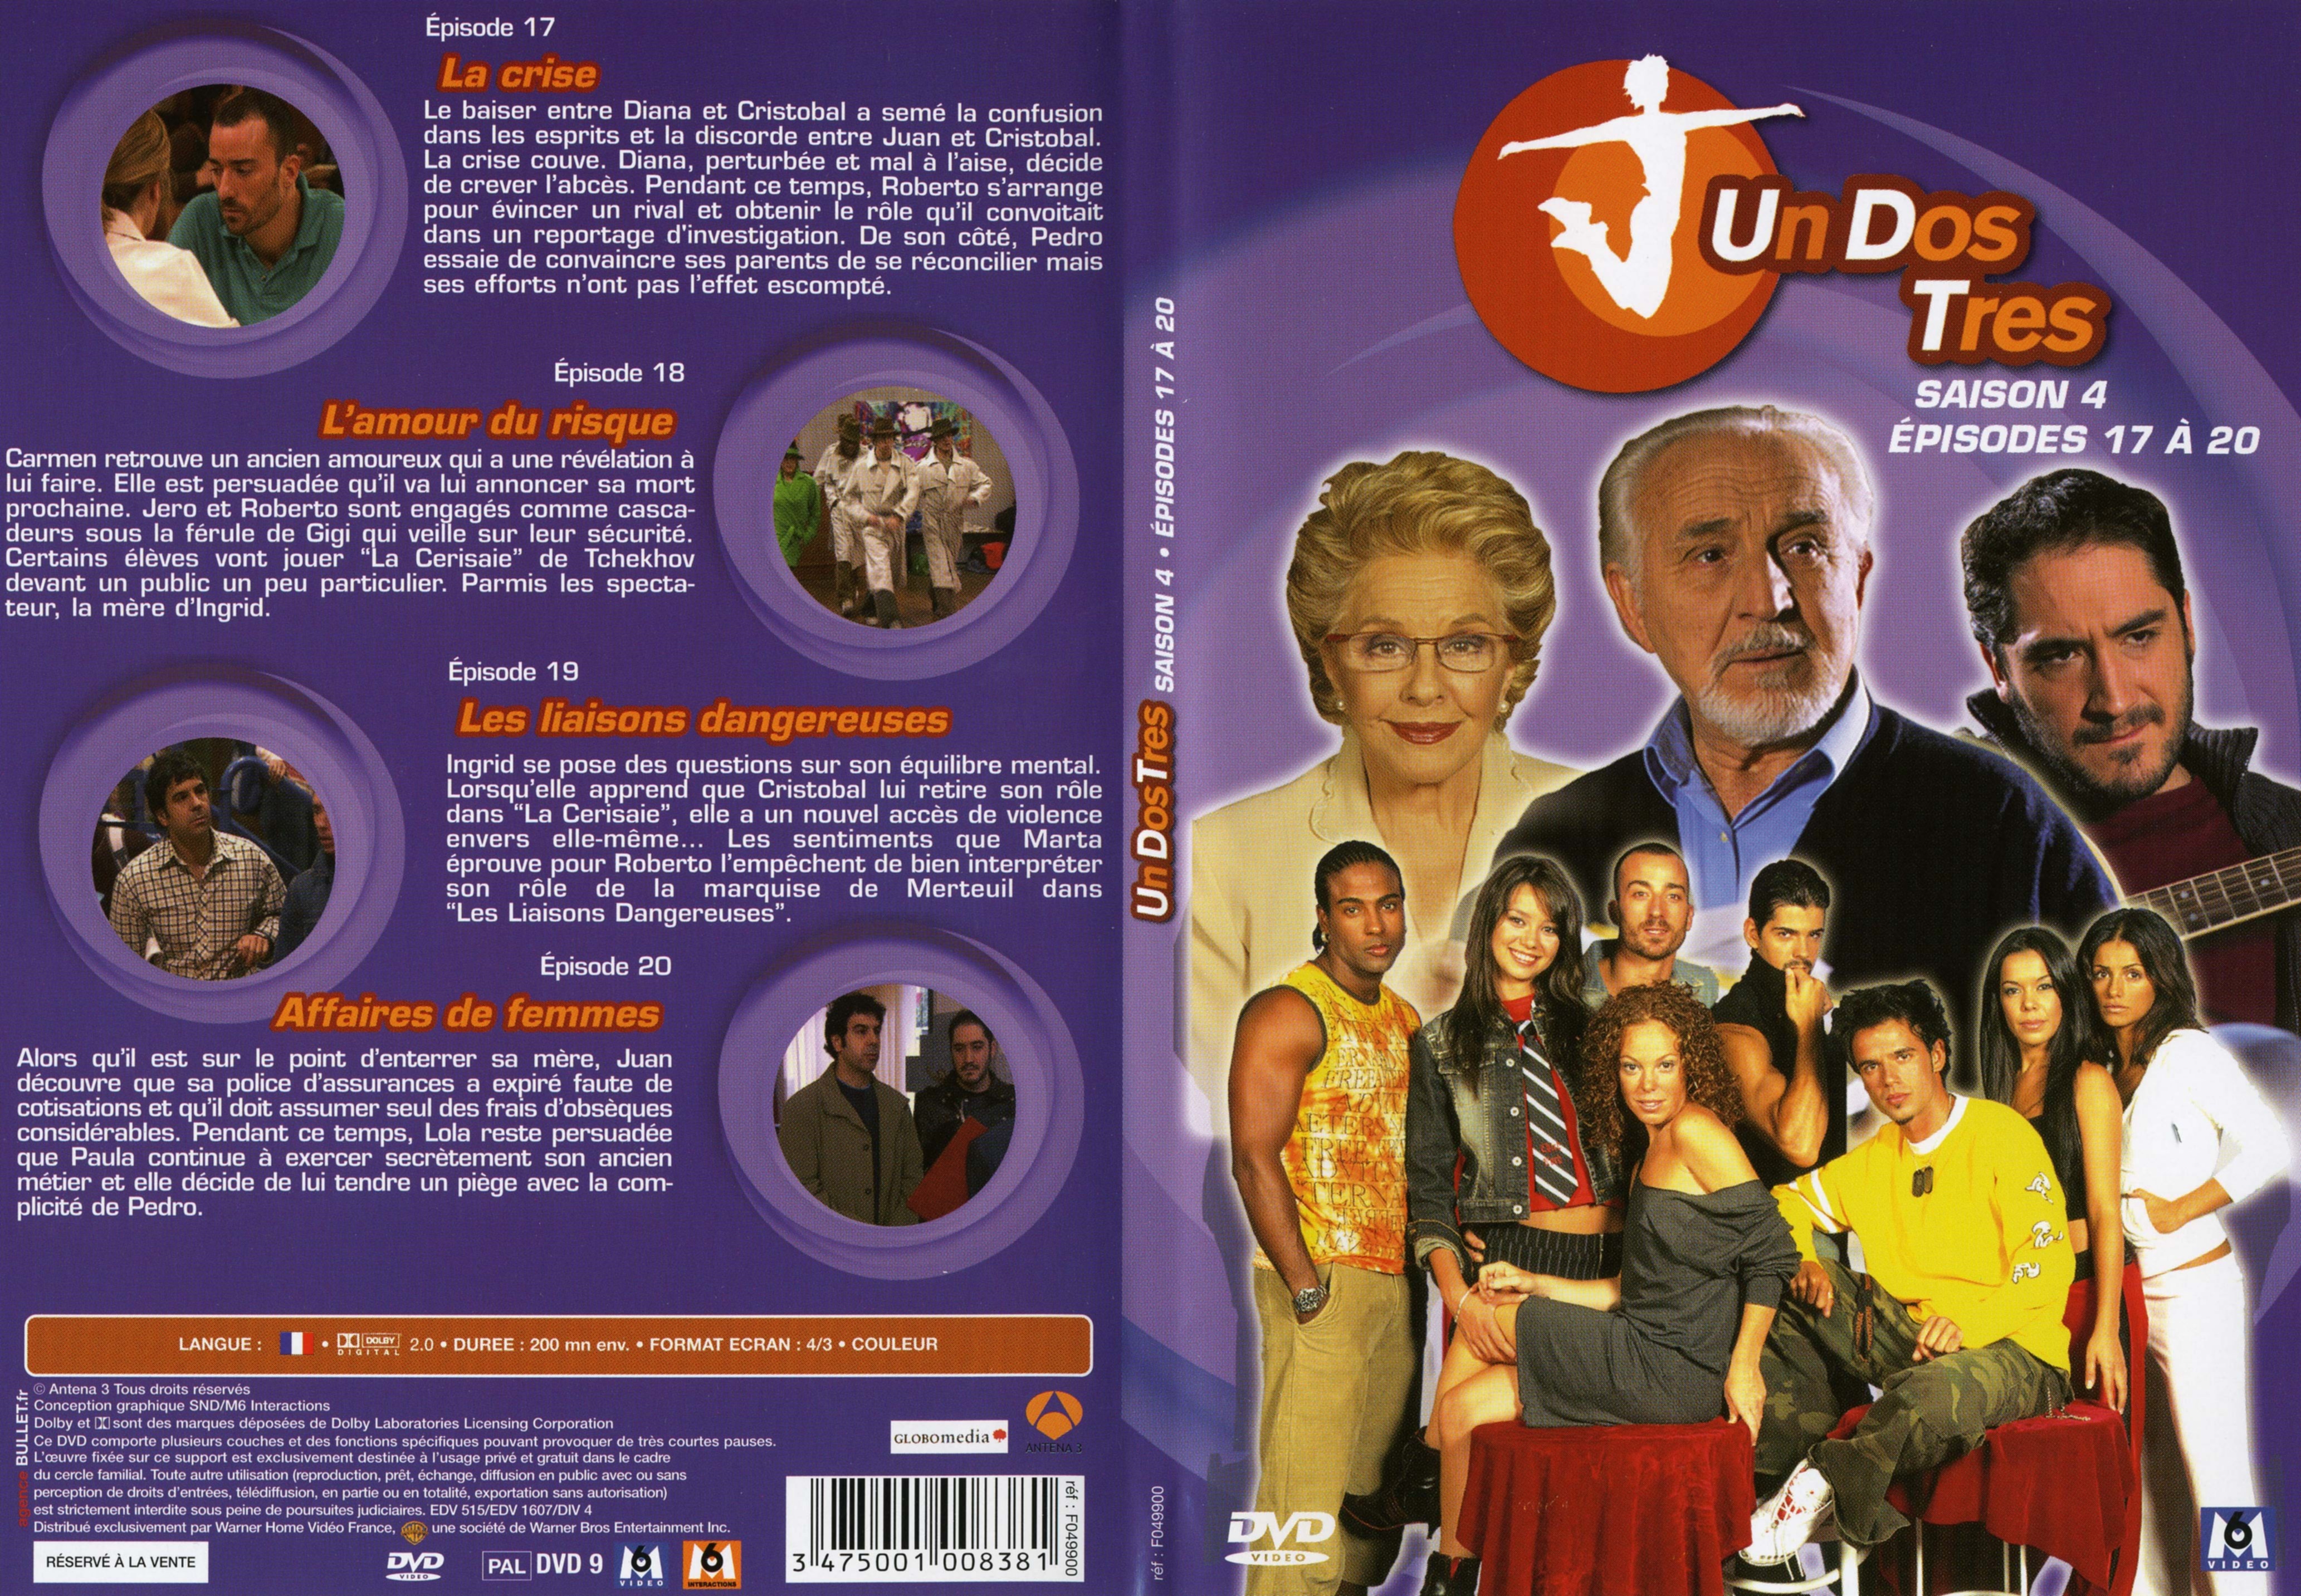 Jaquette DVD Un dos tres Saison 4 DVD 5